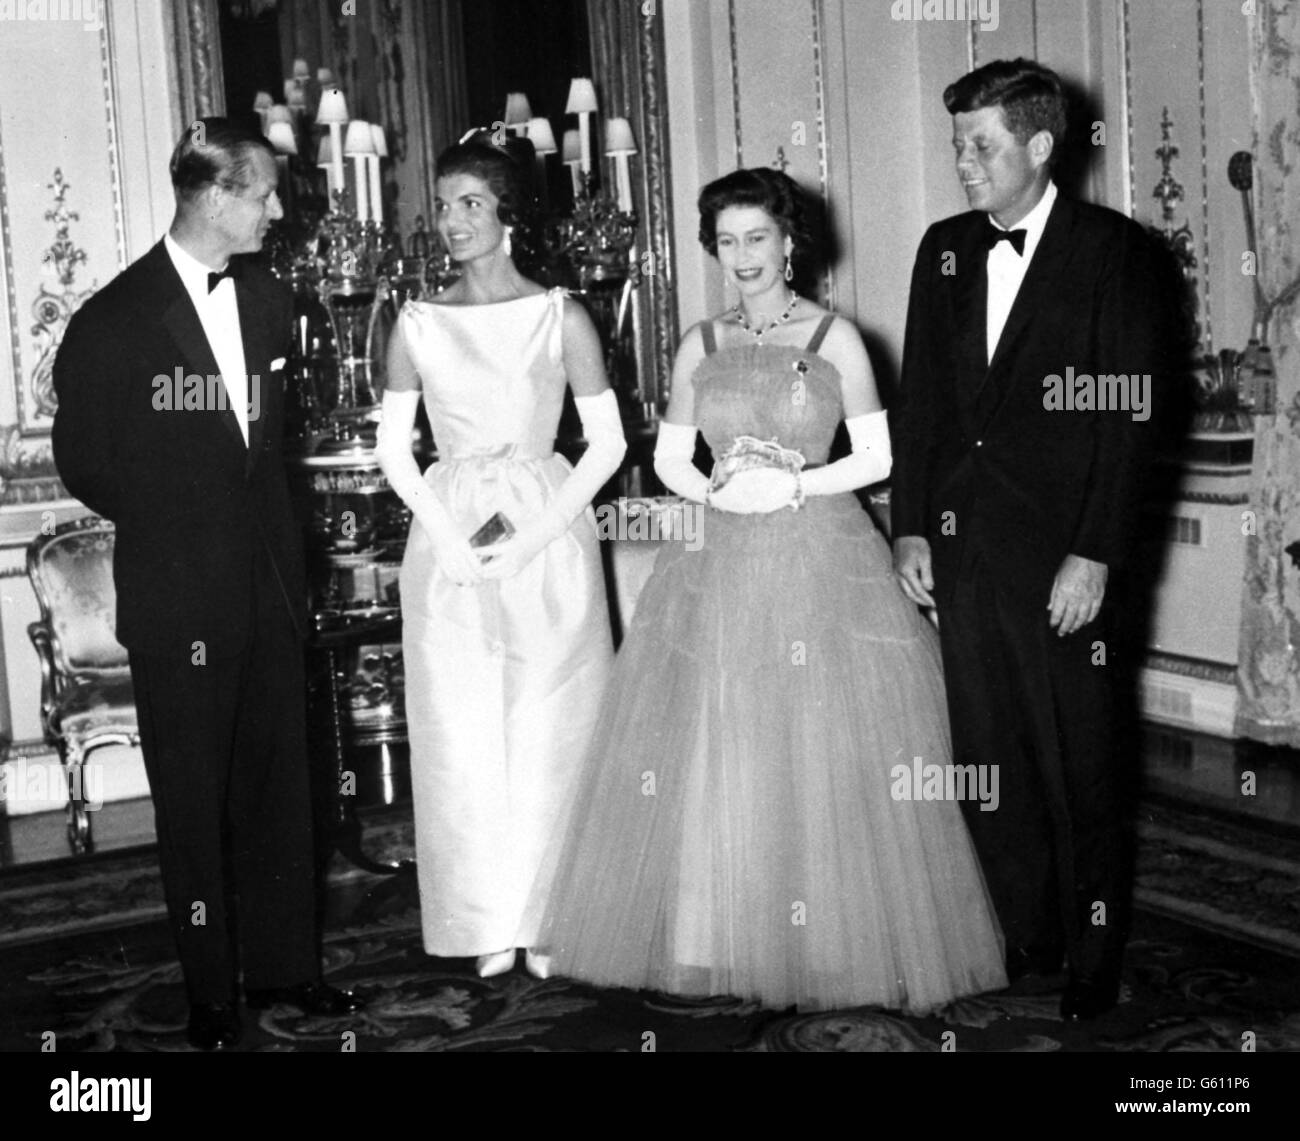 Le président John Kennedy (à droite) avec son épouse (à gauche) Jacqueline, rencontrant la reine Elizabeth II et le duc d'Édimbourg à l'occasion de la visite du président américain en Grande-Bretagne. Banque D'Images